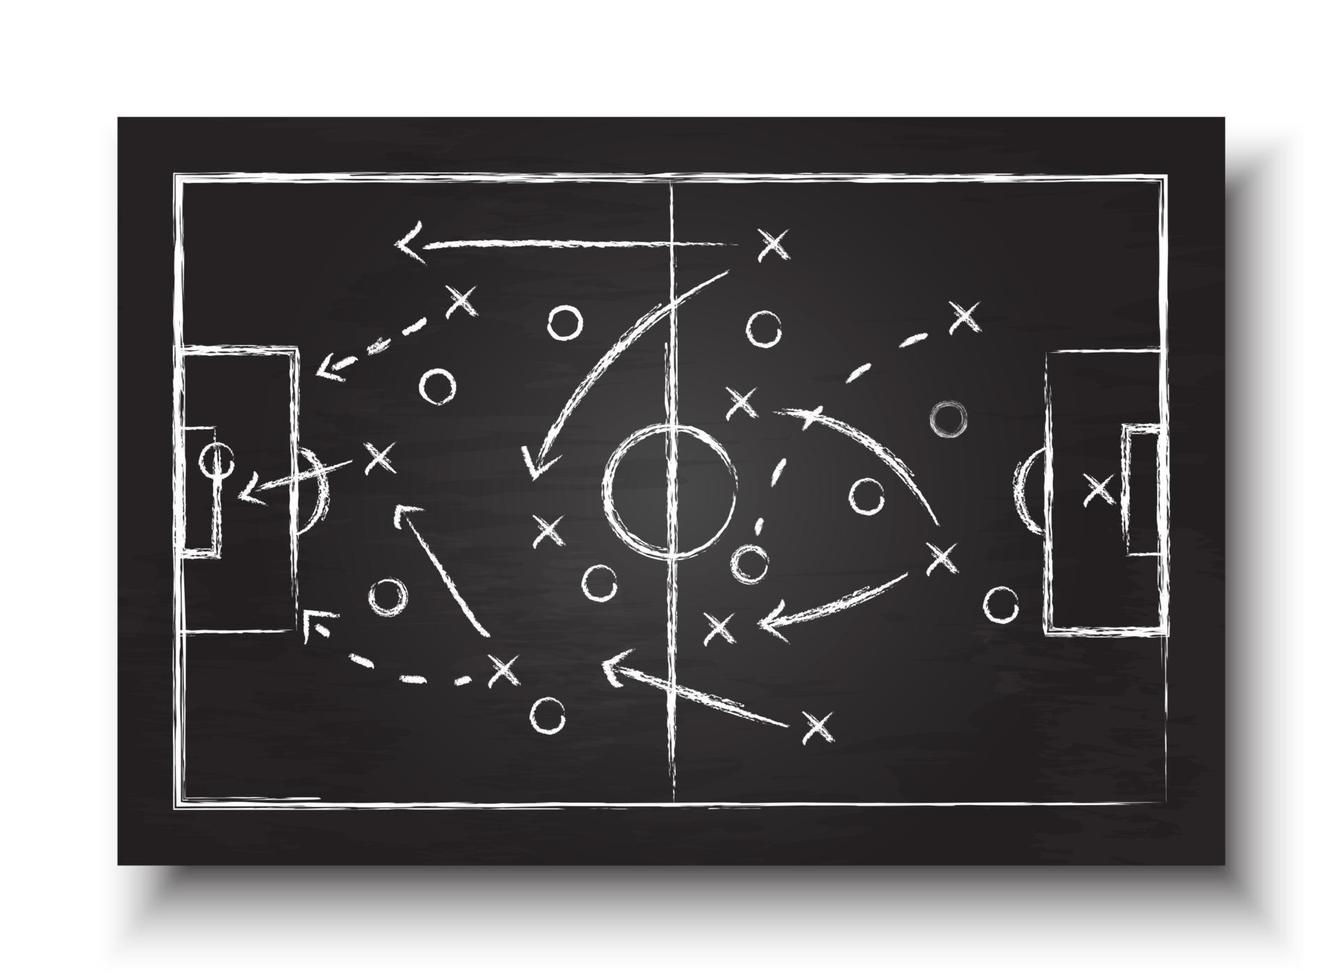 formação de copa de futebol e quadro-negro tático com vetor de estratégia de jogo de futebol para o conceito de torneio do campeonato mundial internacional 2018